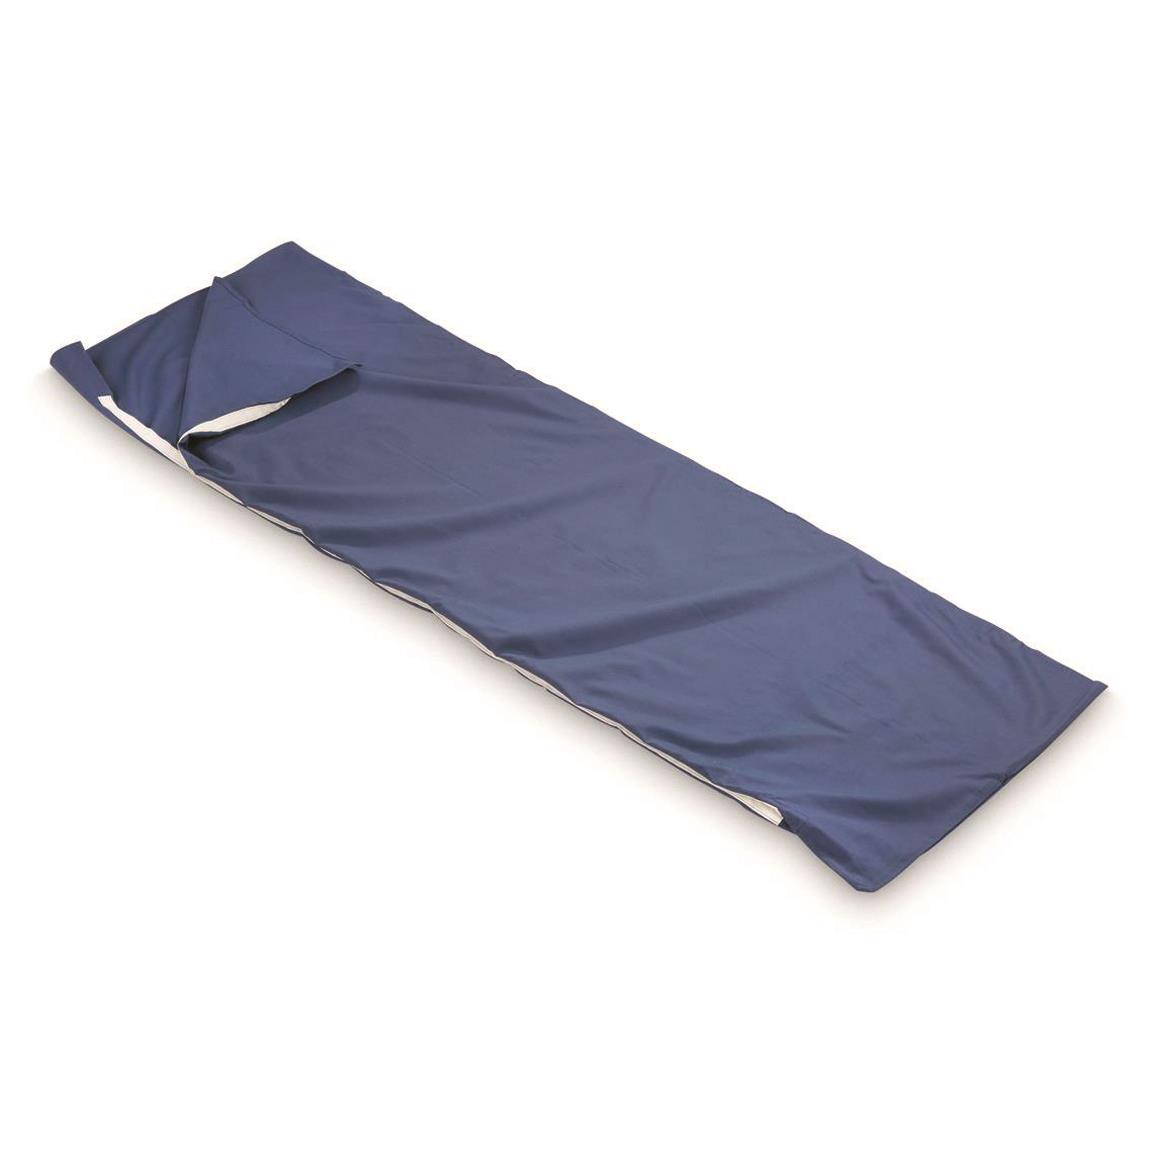 U.S. Navy Surplus Cotton Sleeping Bag Liners, 10 Pack, Used